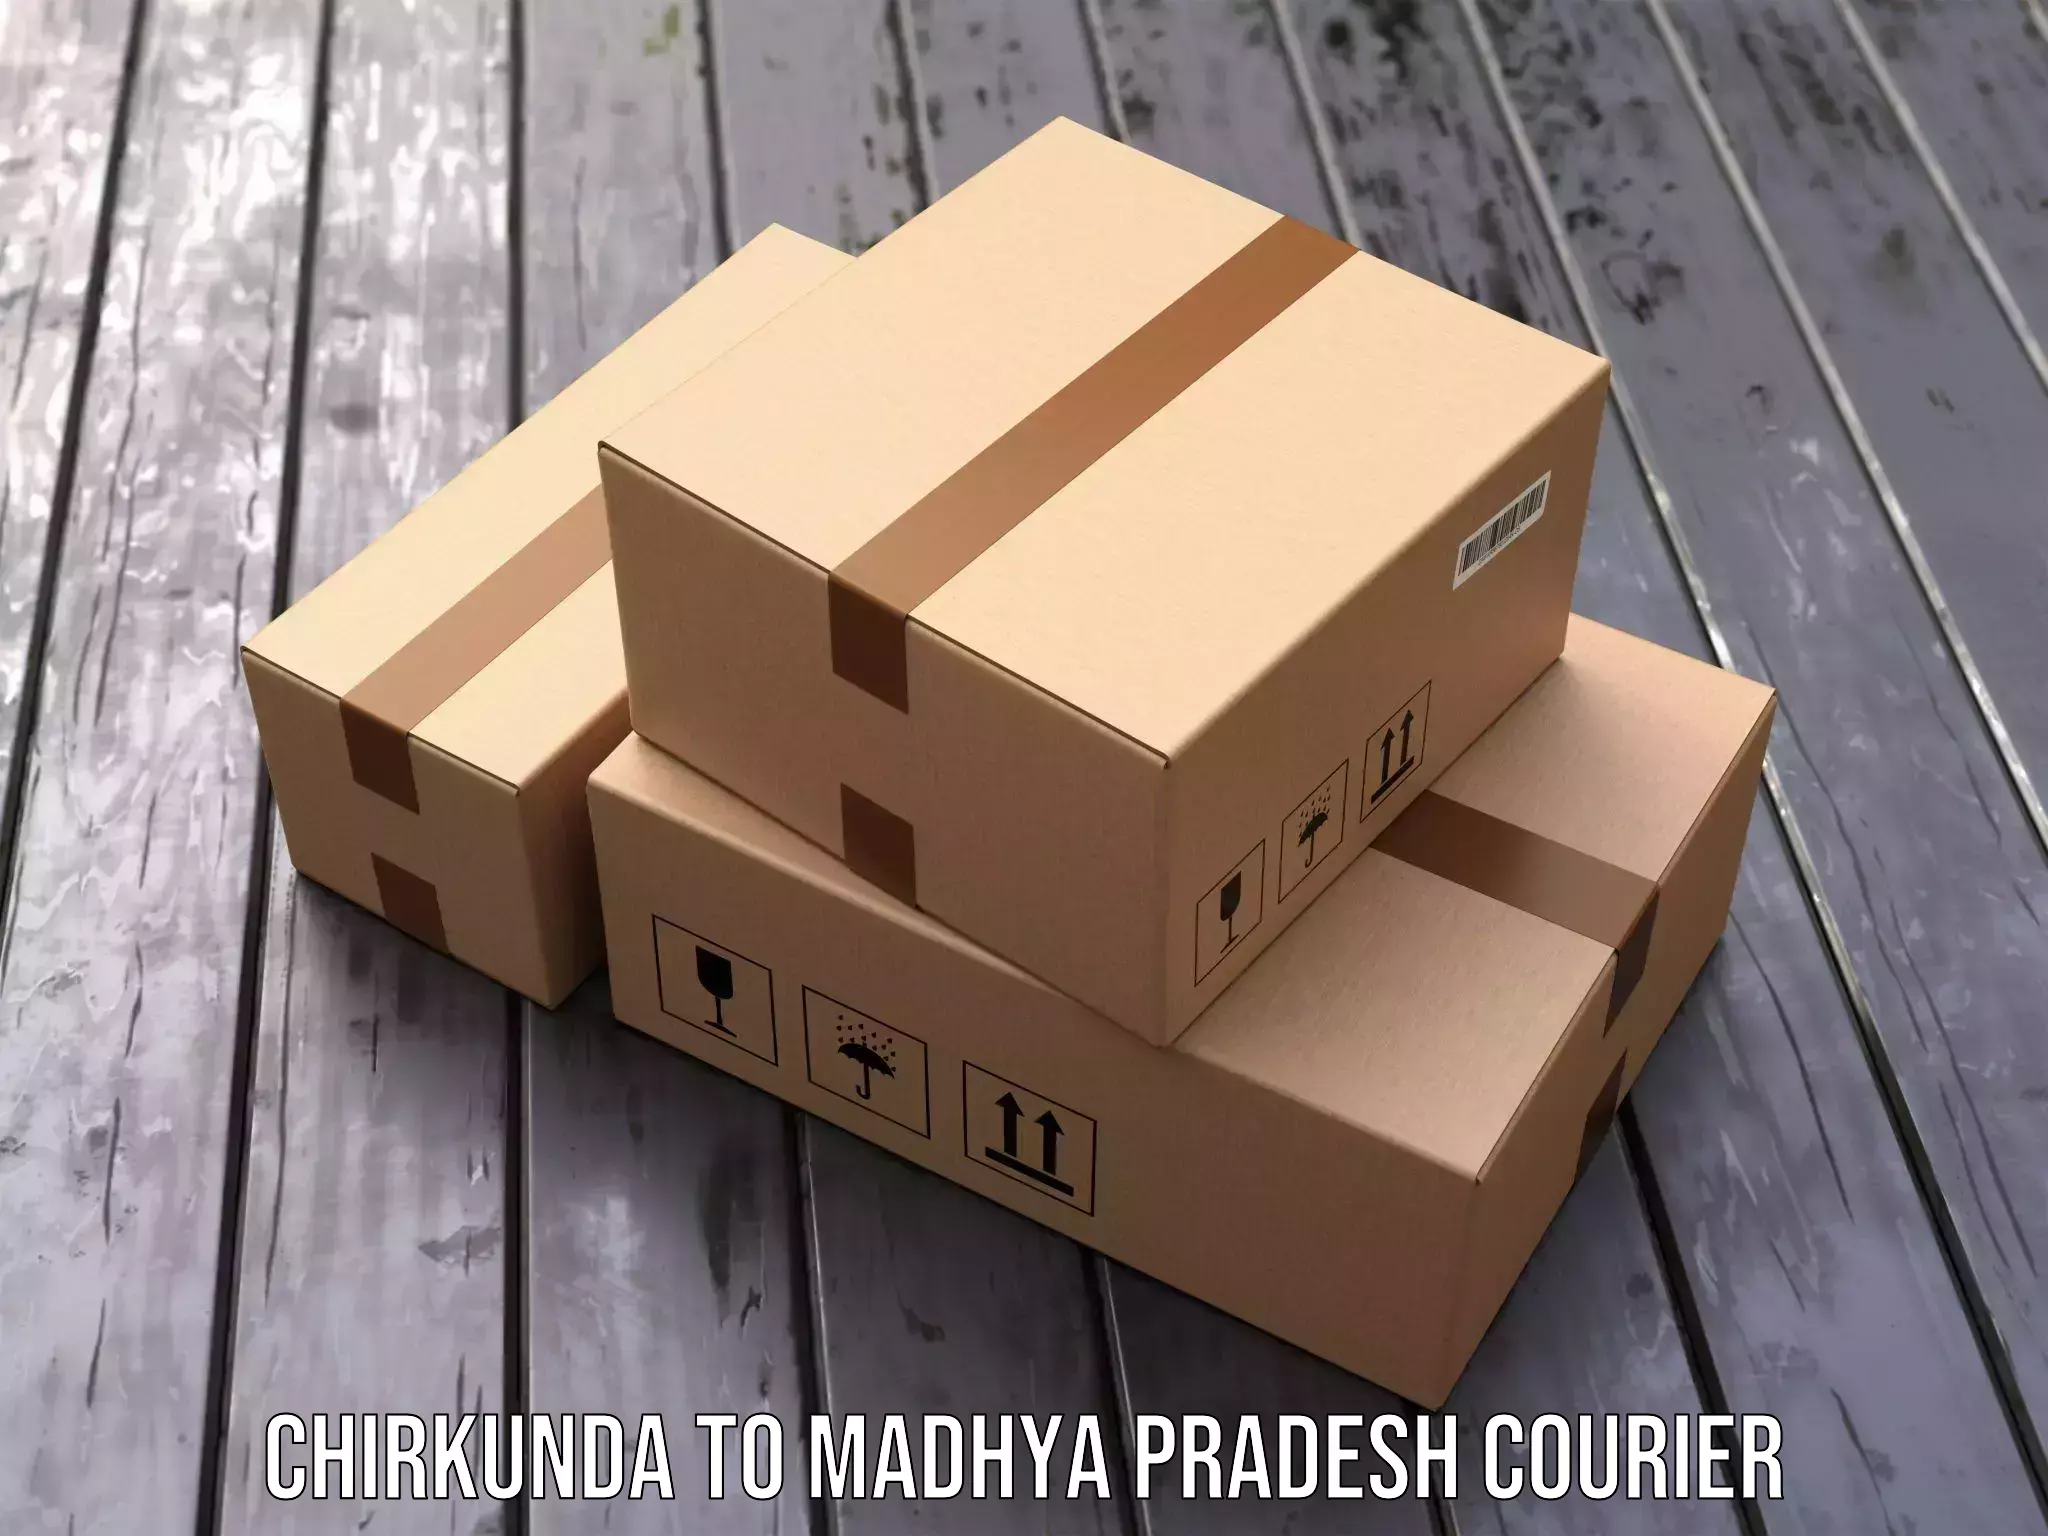 State-of-the-art courier technology Chirkunda to Madhya Pradesh